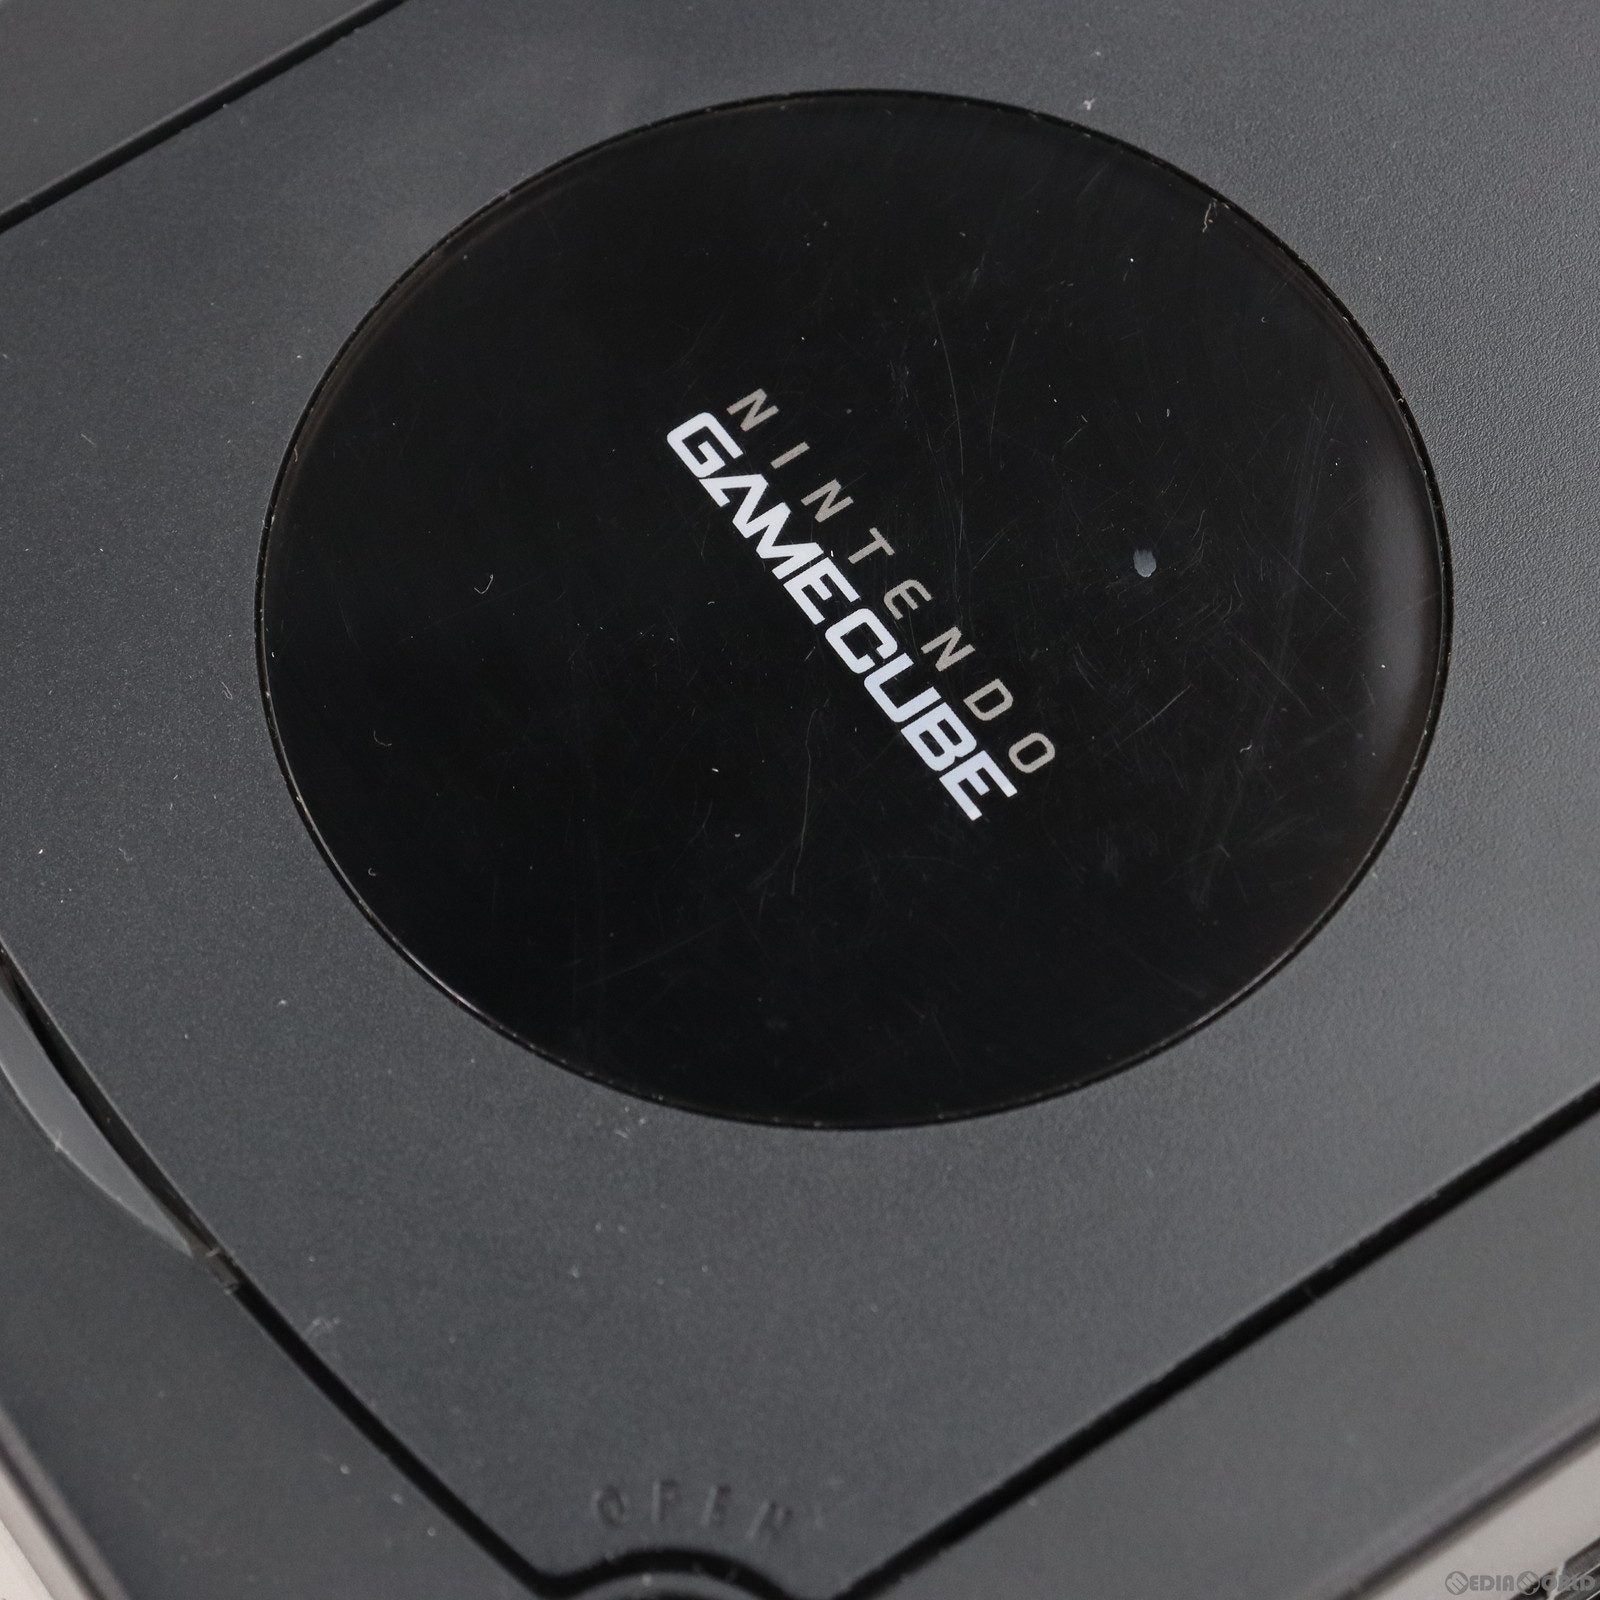 【中古即納】[本体][GC]ニンテンドーゲームキューブ+ゲームボーイプレーヤー エンジョイプラスパック ブラック(DOL-S-KM)(20030621)